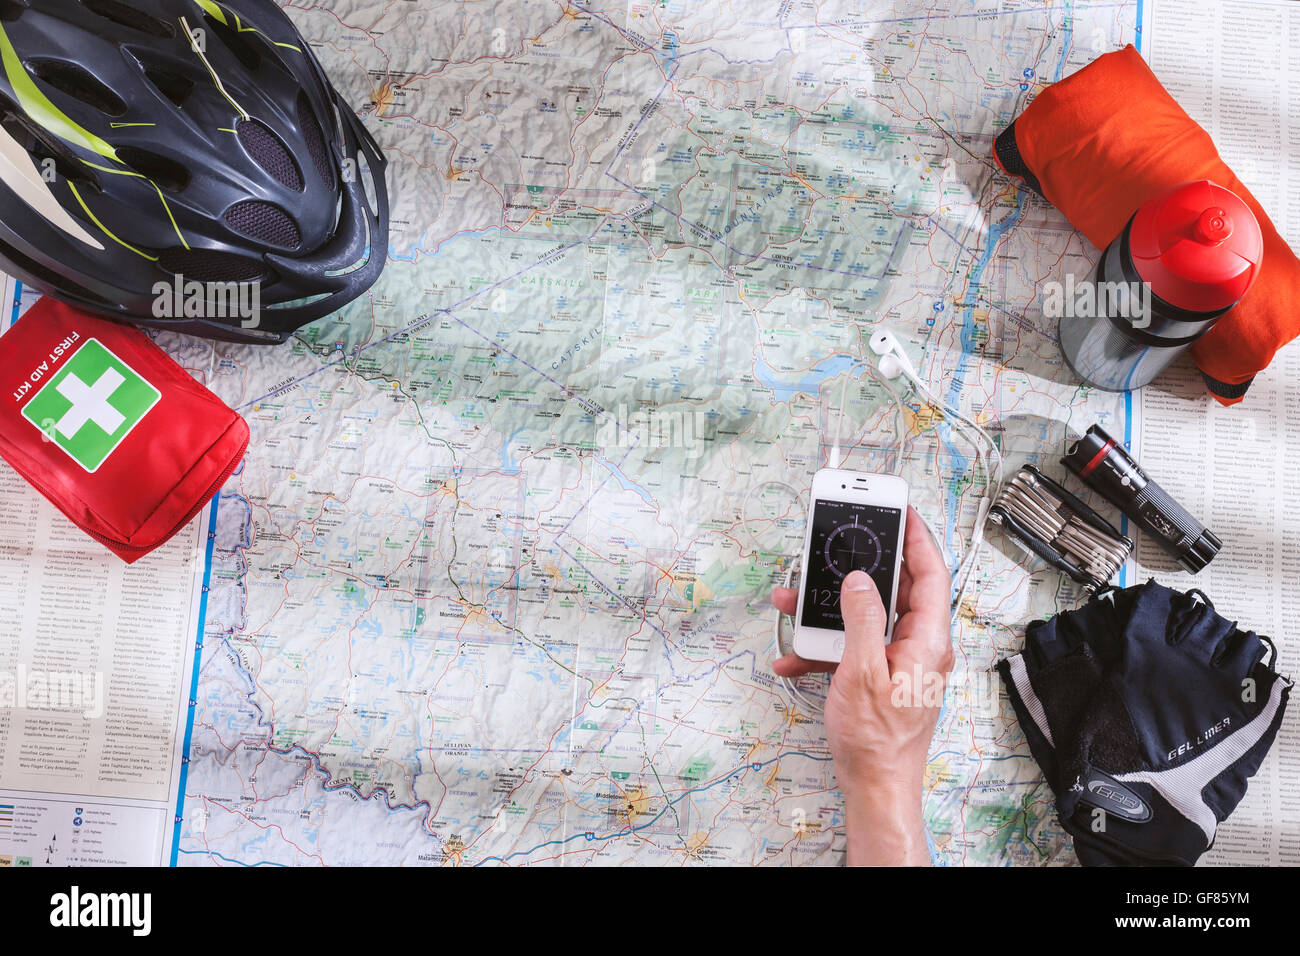 Accessoires Vélos répartis sur la carte lors de la planification d'une excursion à bicyclette dans les montagnes avec application boussole sur smartphone dans la main Banque D'Images